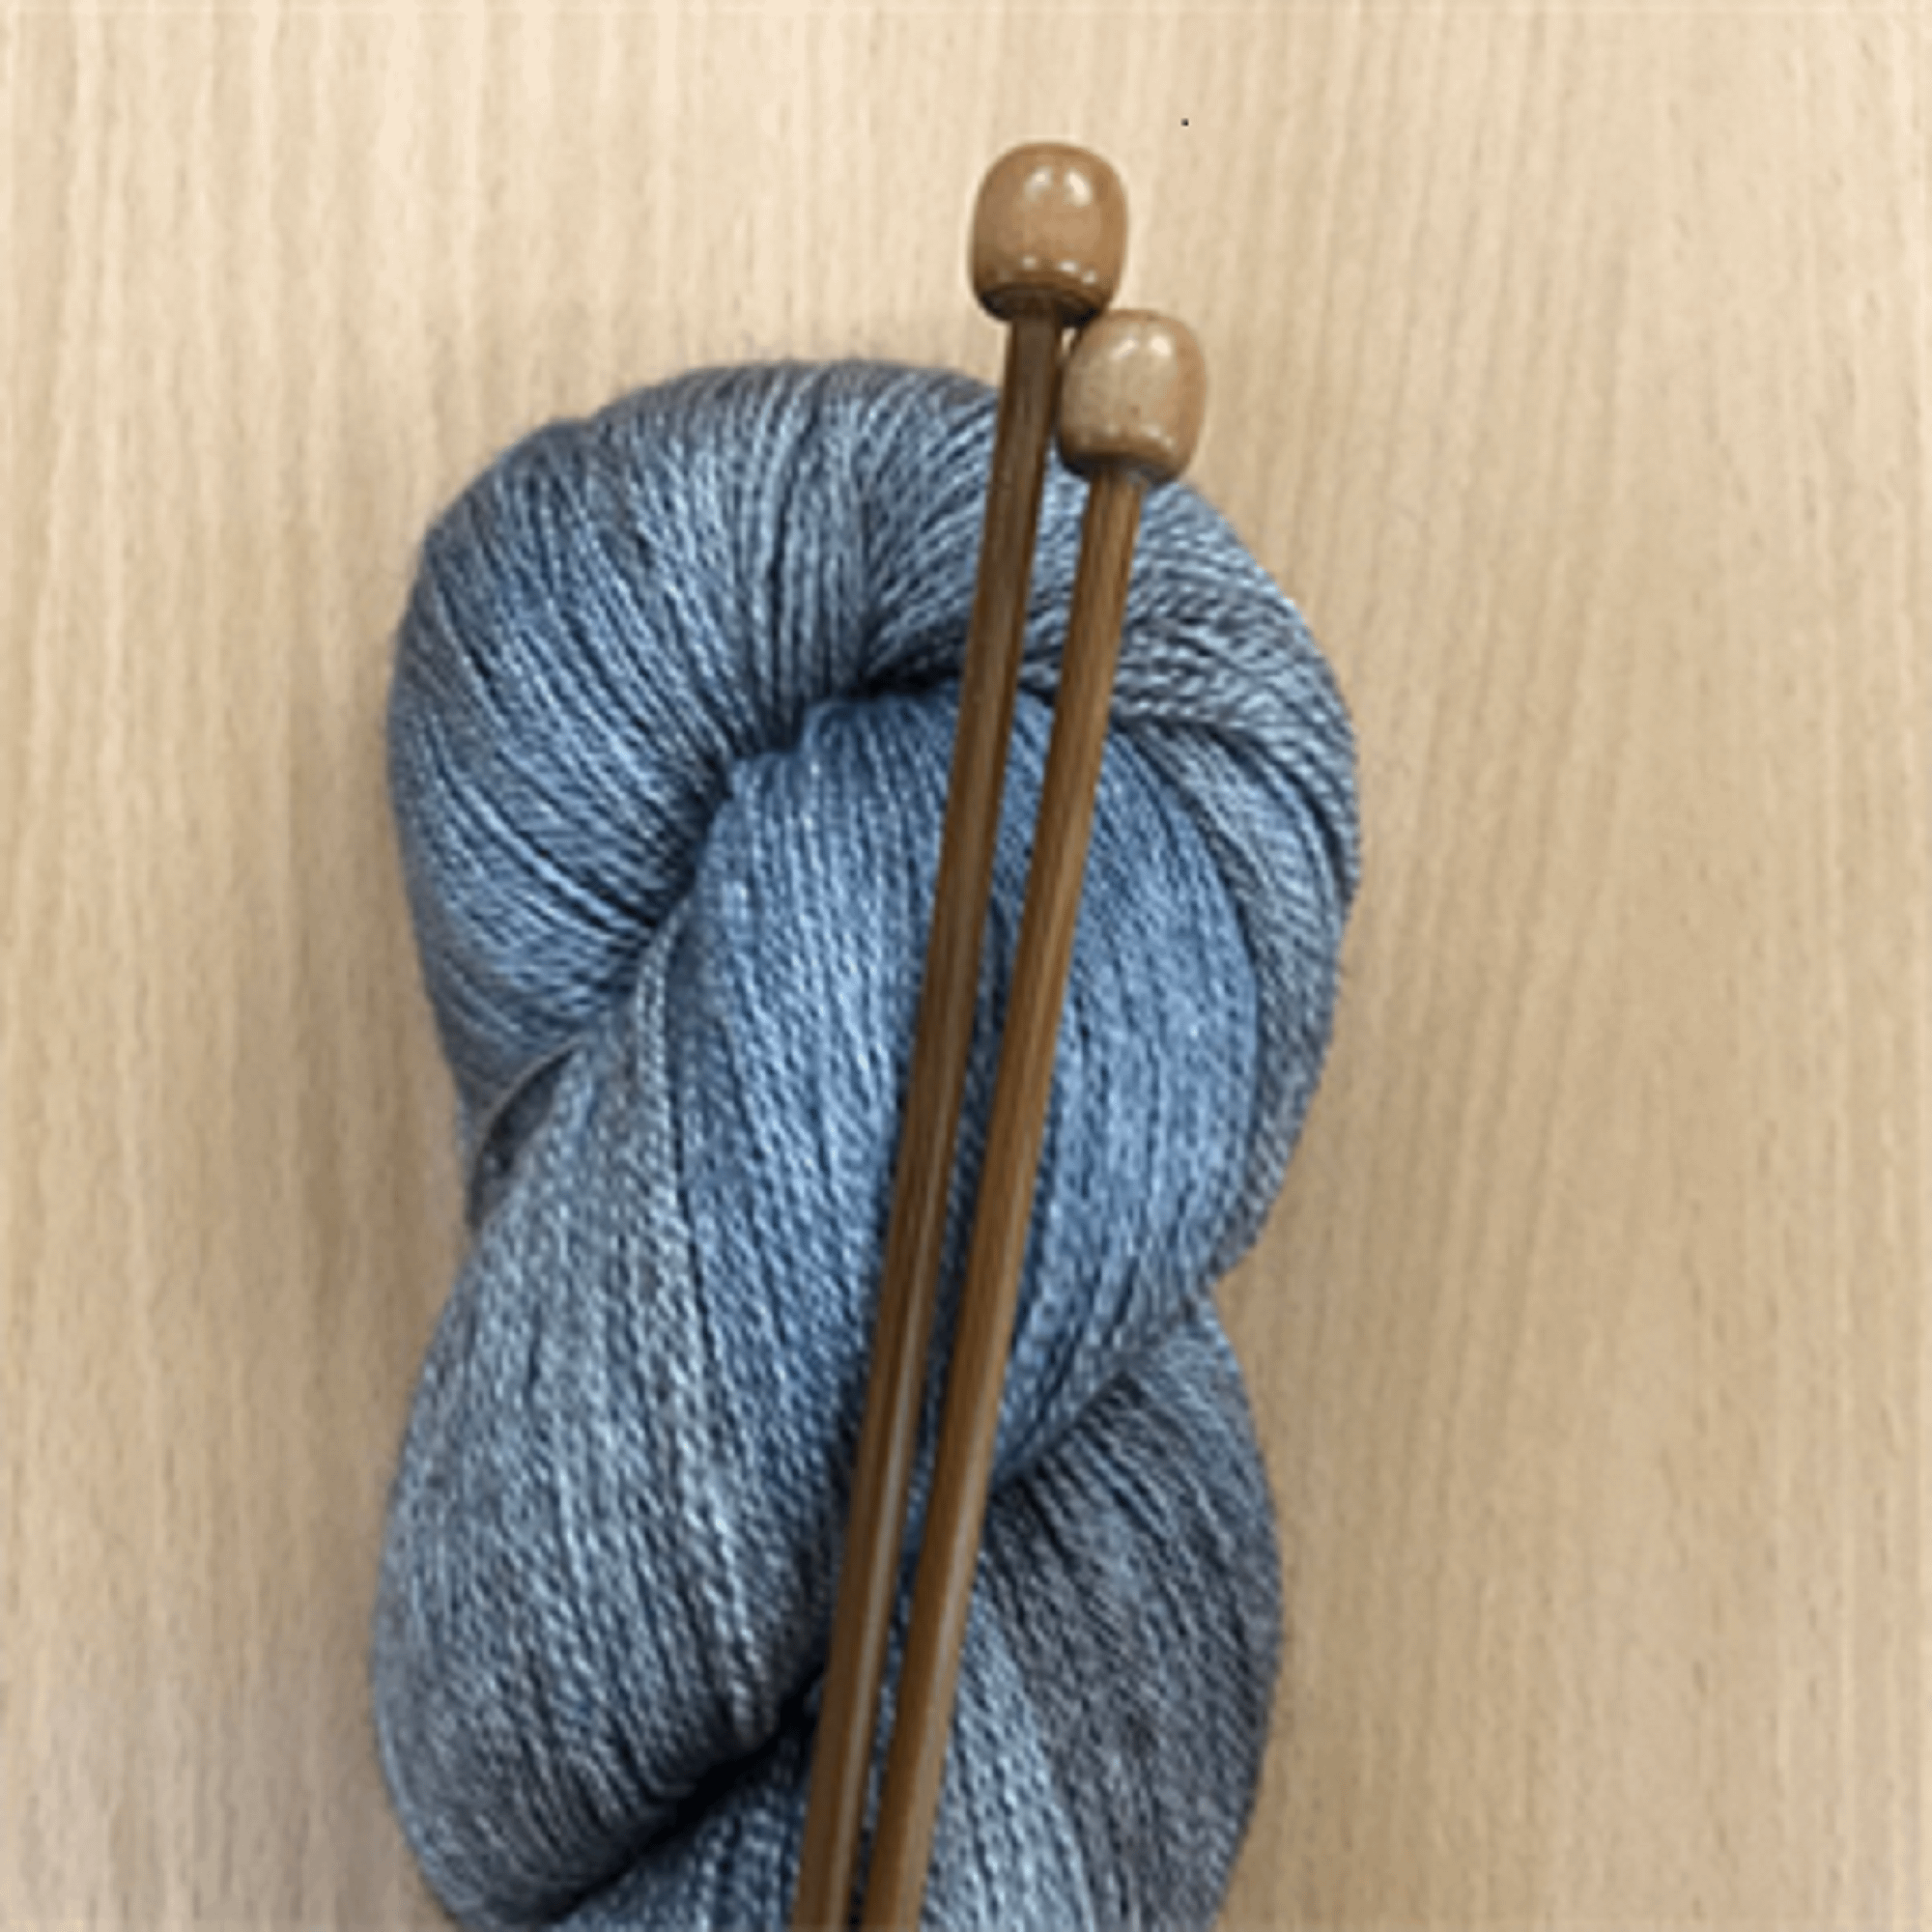 ChiaoGoo Bamboo Straight Knitting Needle Set